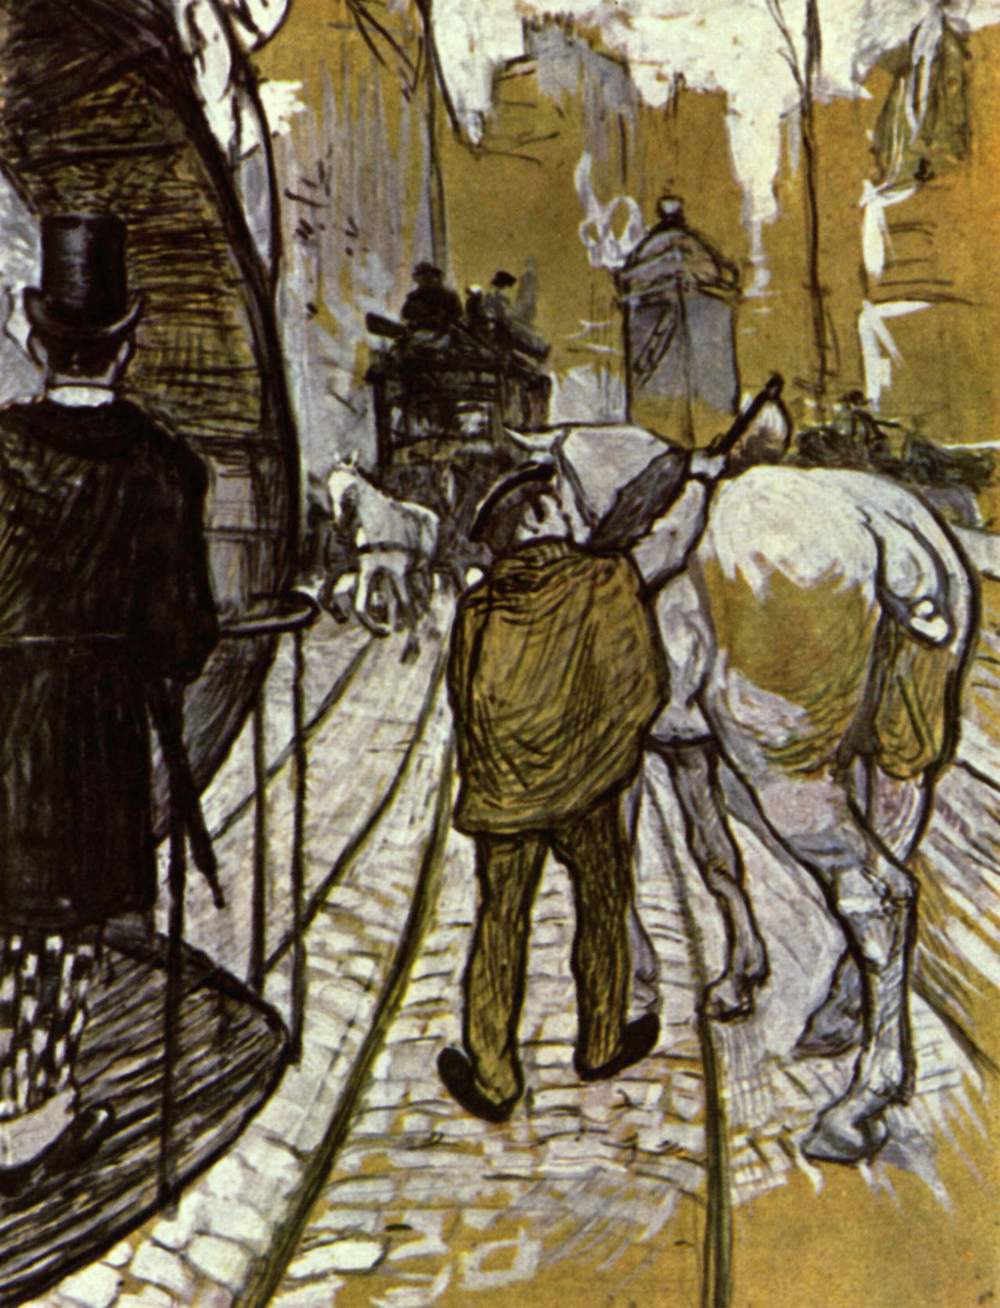 La Compagnie de Bus Côtière by Henri de Toulouse-Lautrec - 1888 - 80 x 51 cm collection privée